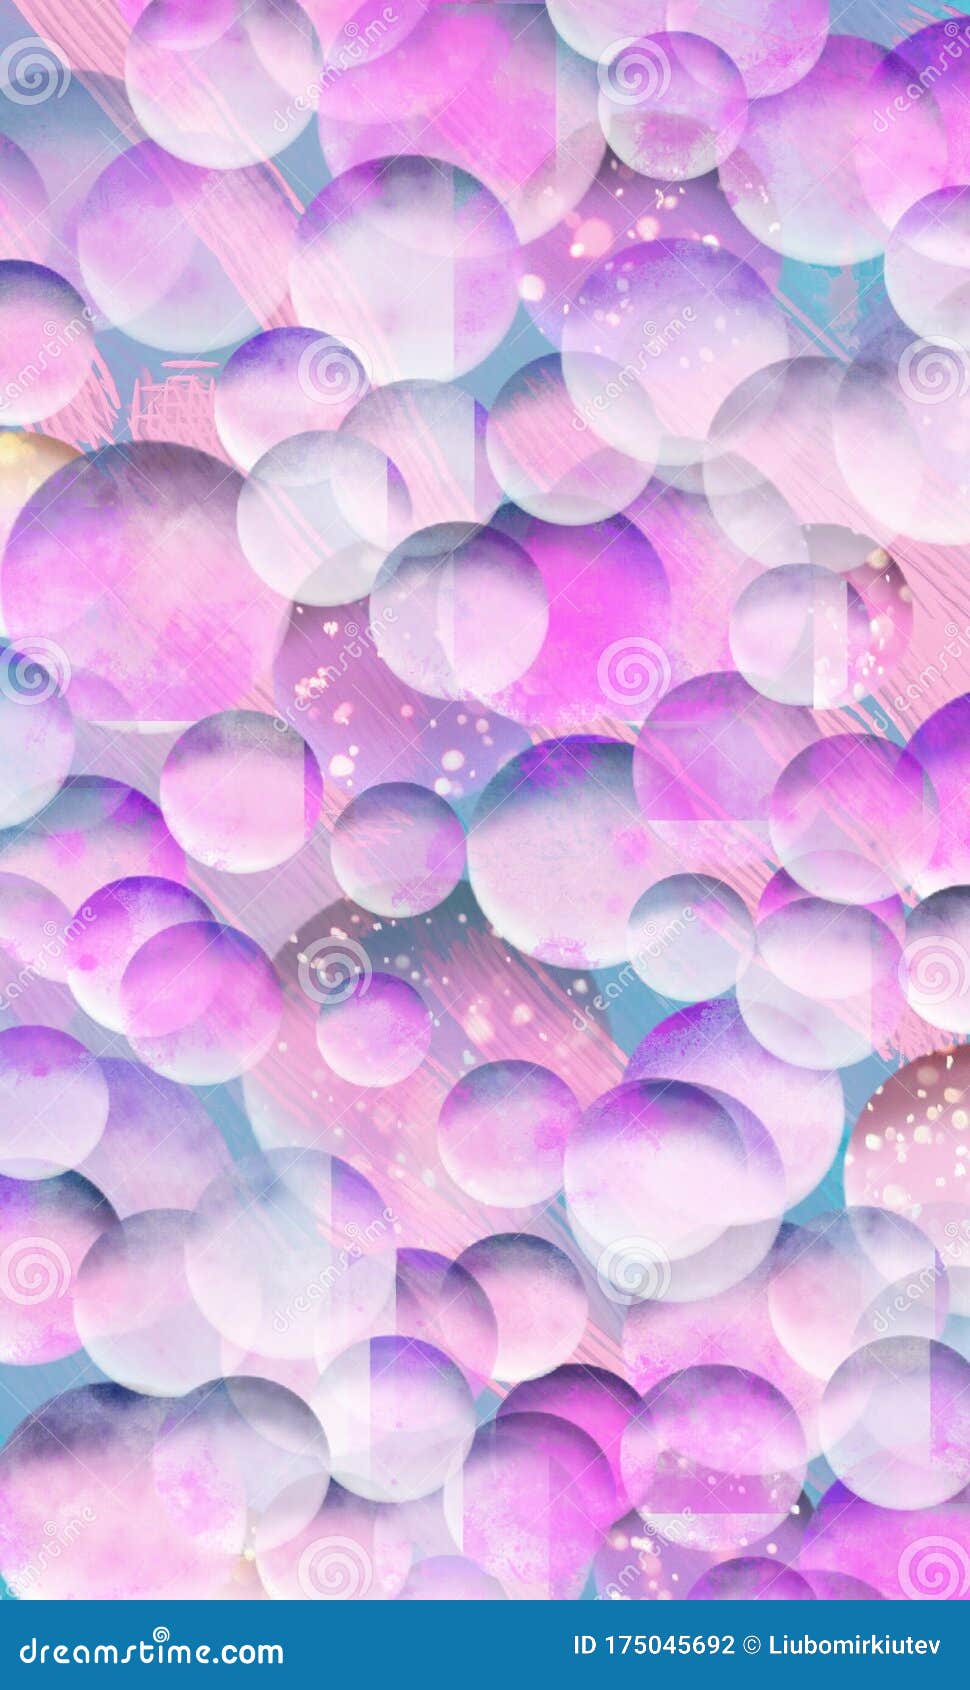 Nếu bạn muốn thưởng thức một thế giới đầy màu sắc và huyền diệu, hãy xem hình ảnh về bong bóng đa sắc màu 3D này. Các bong bóng sẽ mang lại cho bạn cảm giác như đang đắm chìm trong một thế giới ma thuật với những màu sắc ngọt ngào và rực rỡ.